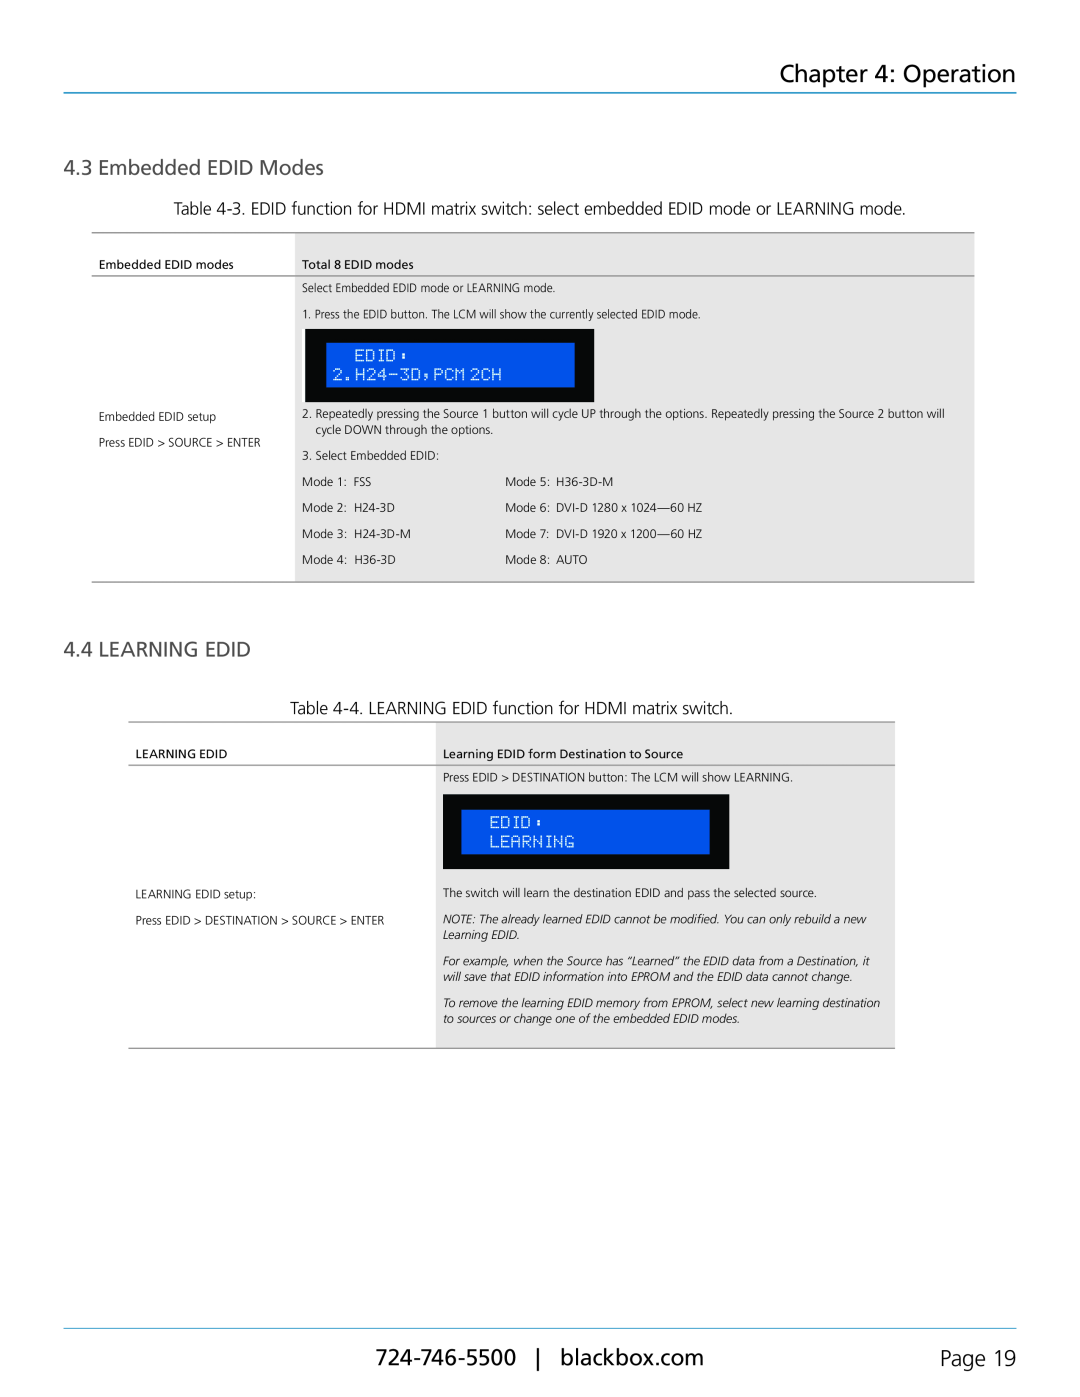 Black Box AVSW-HDMI-RX, AVSW-HDMI8X8-X manual Embedded EDID Modes, Learning Edid, Operation, Page 